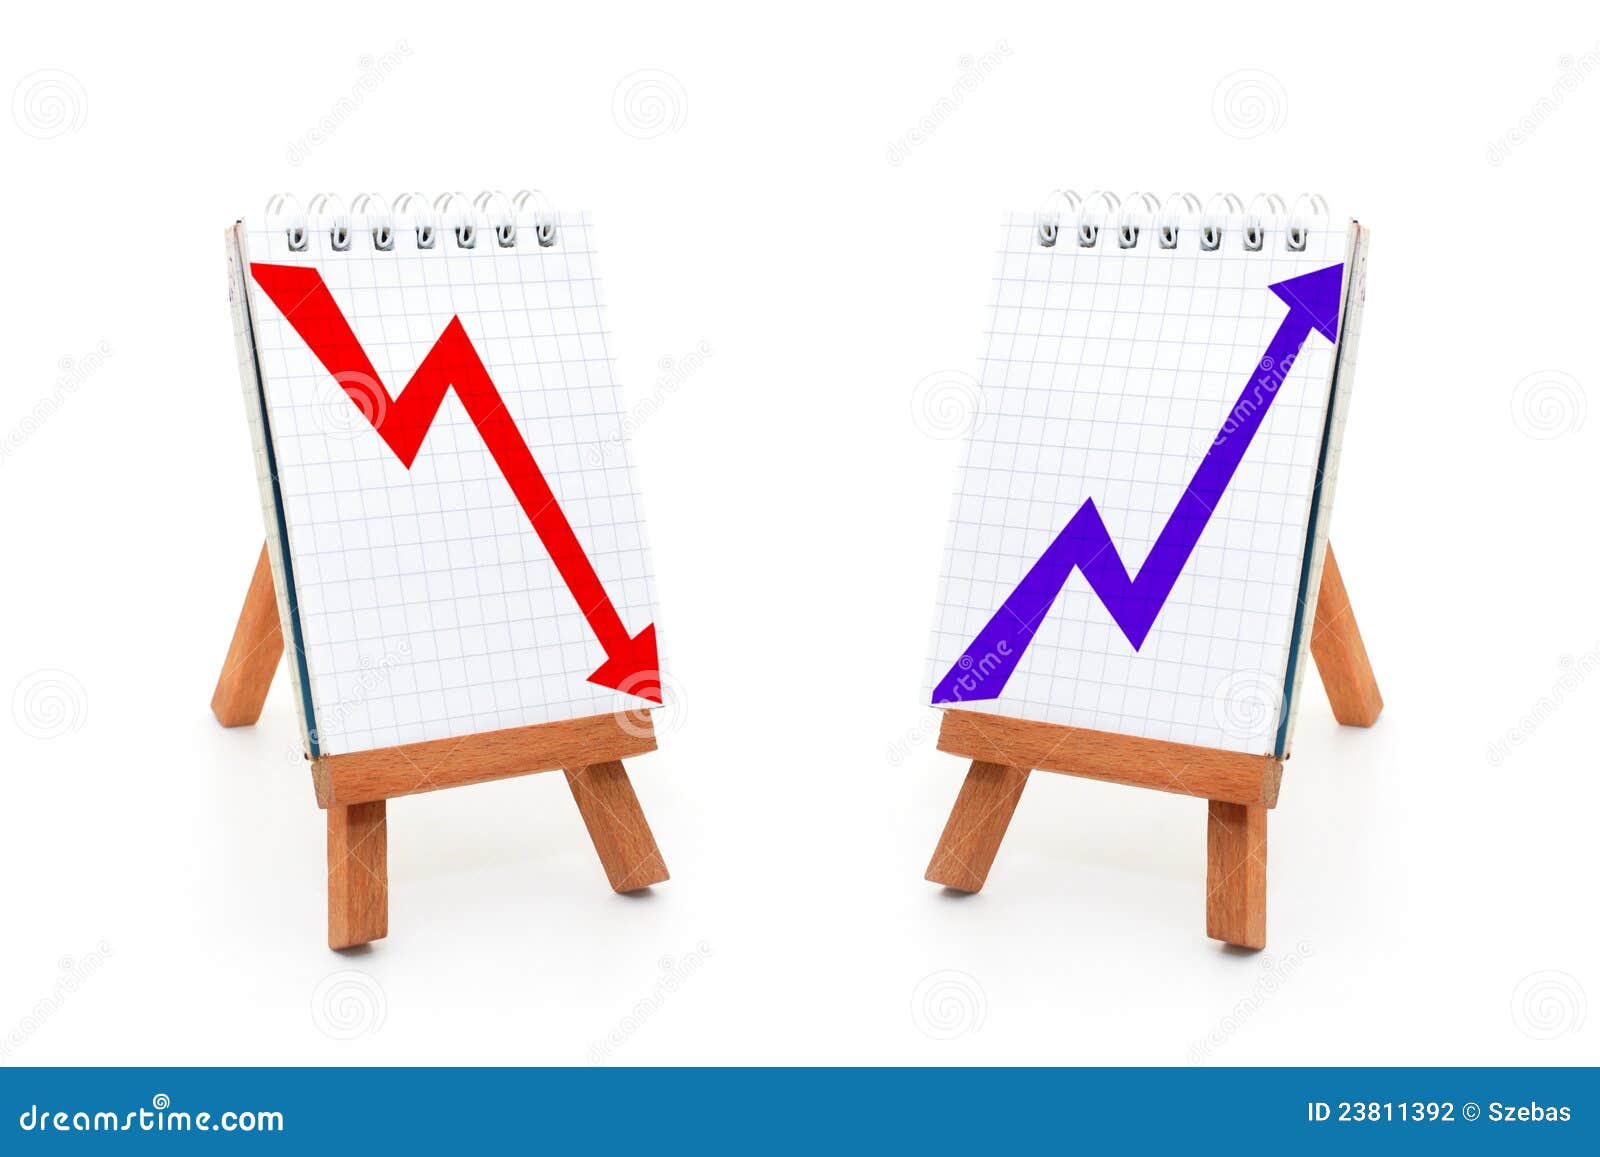 upward and downward graphs